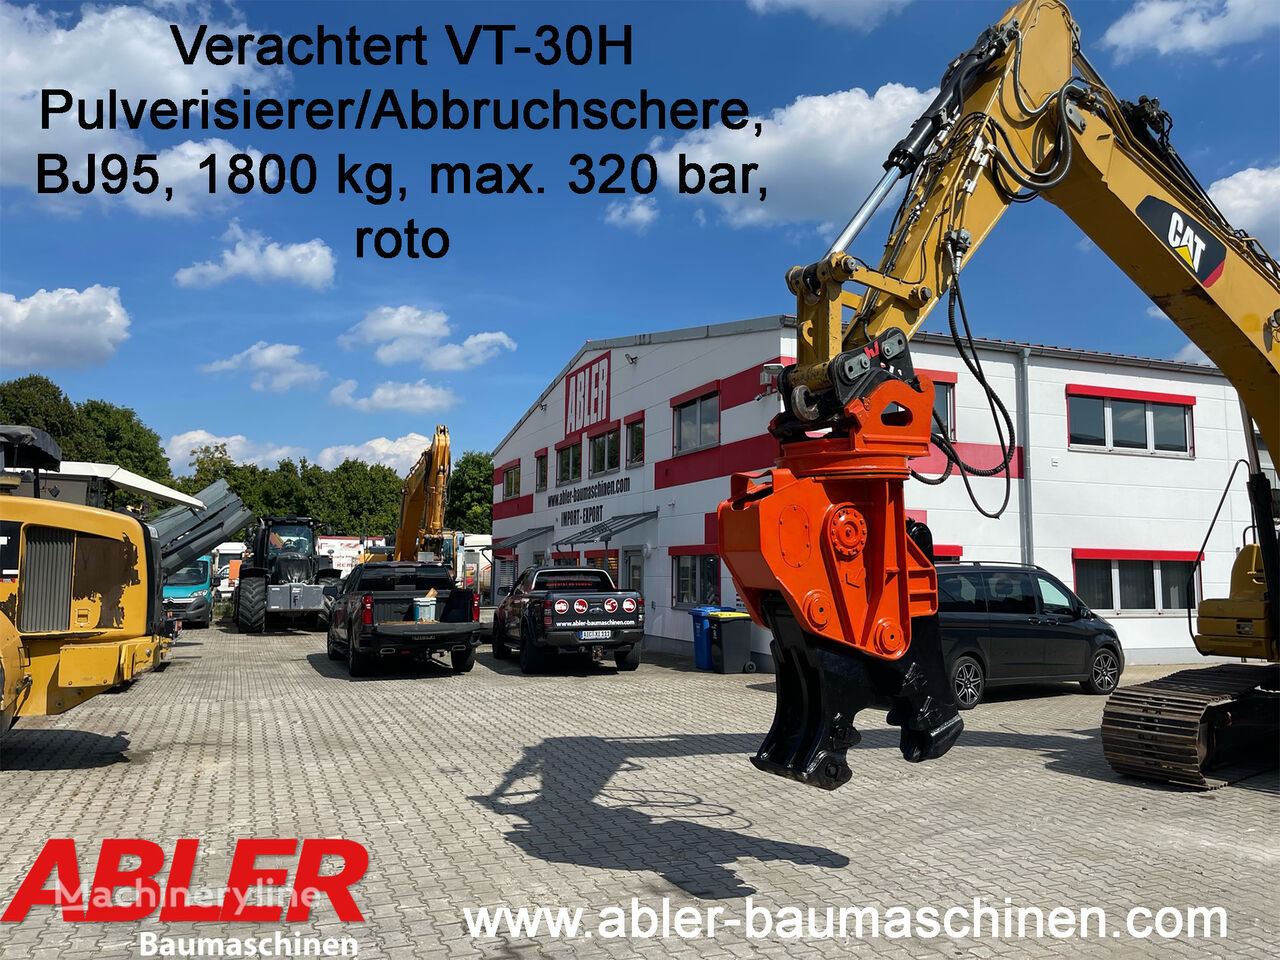 υδραυλικό ψαλίδι Verachtert VT30H Abbruchschere/Pulverisierer 15-25t Bagger